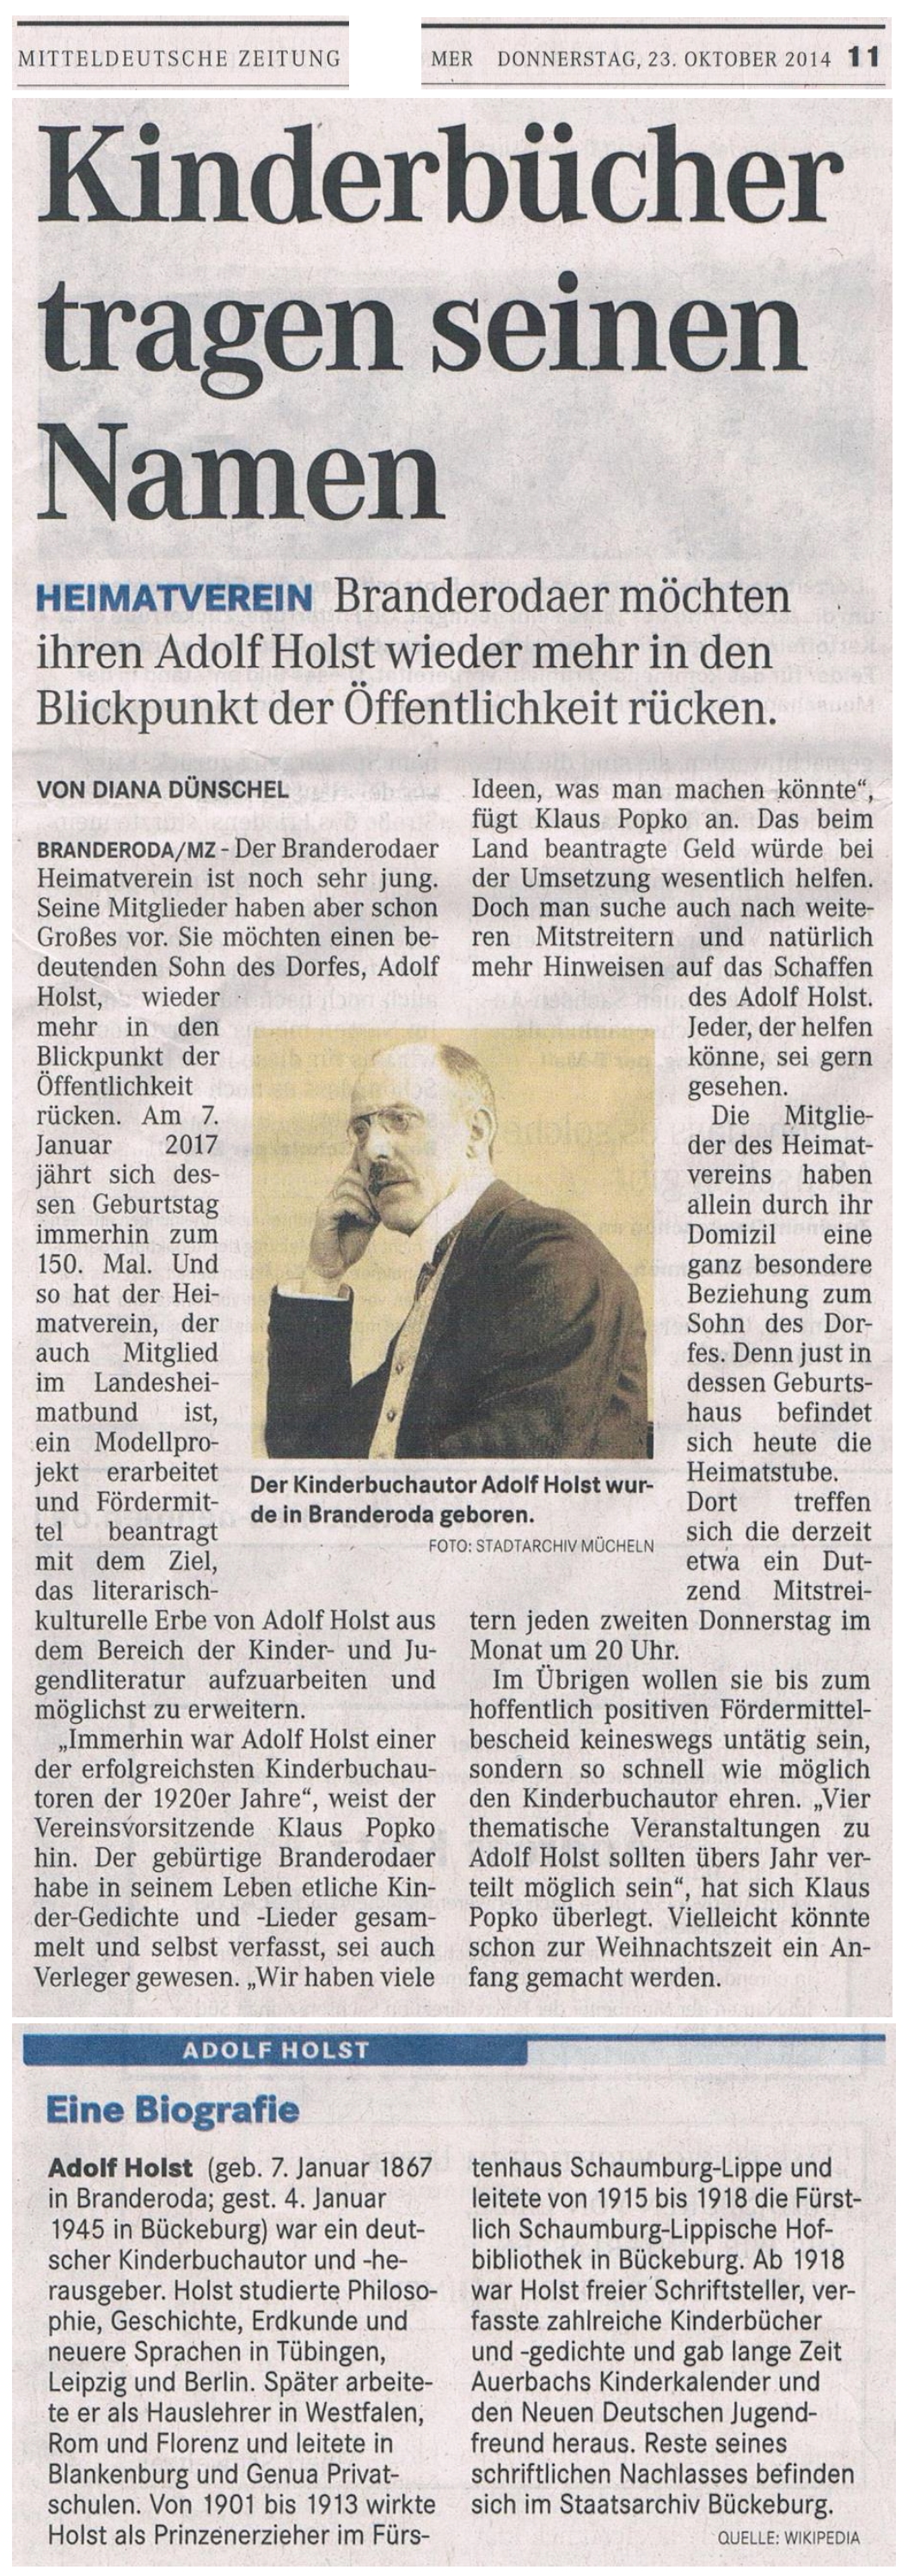 Kinderbücher tragen seinen Namen - Mitteldeutsche Zeitung, Lokalredaktion Merseburg, 23.10.2014